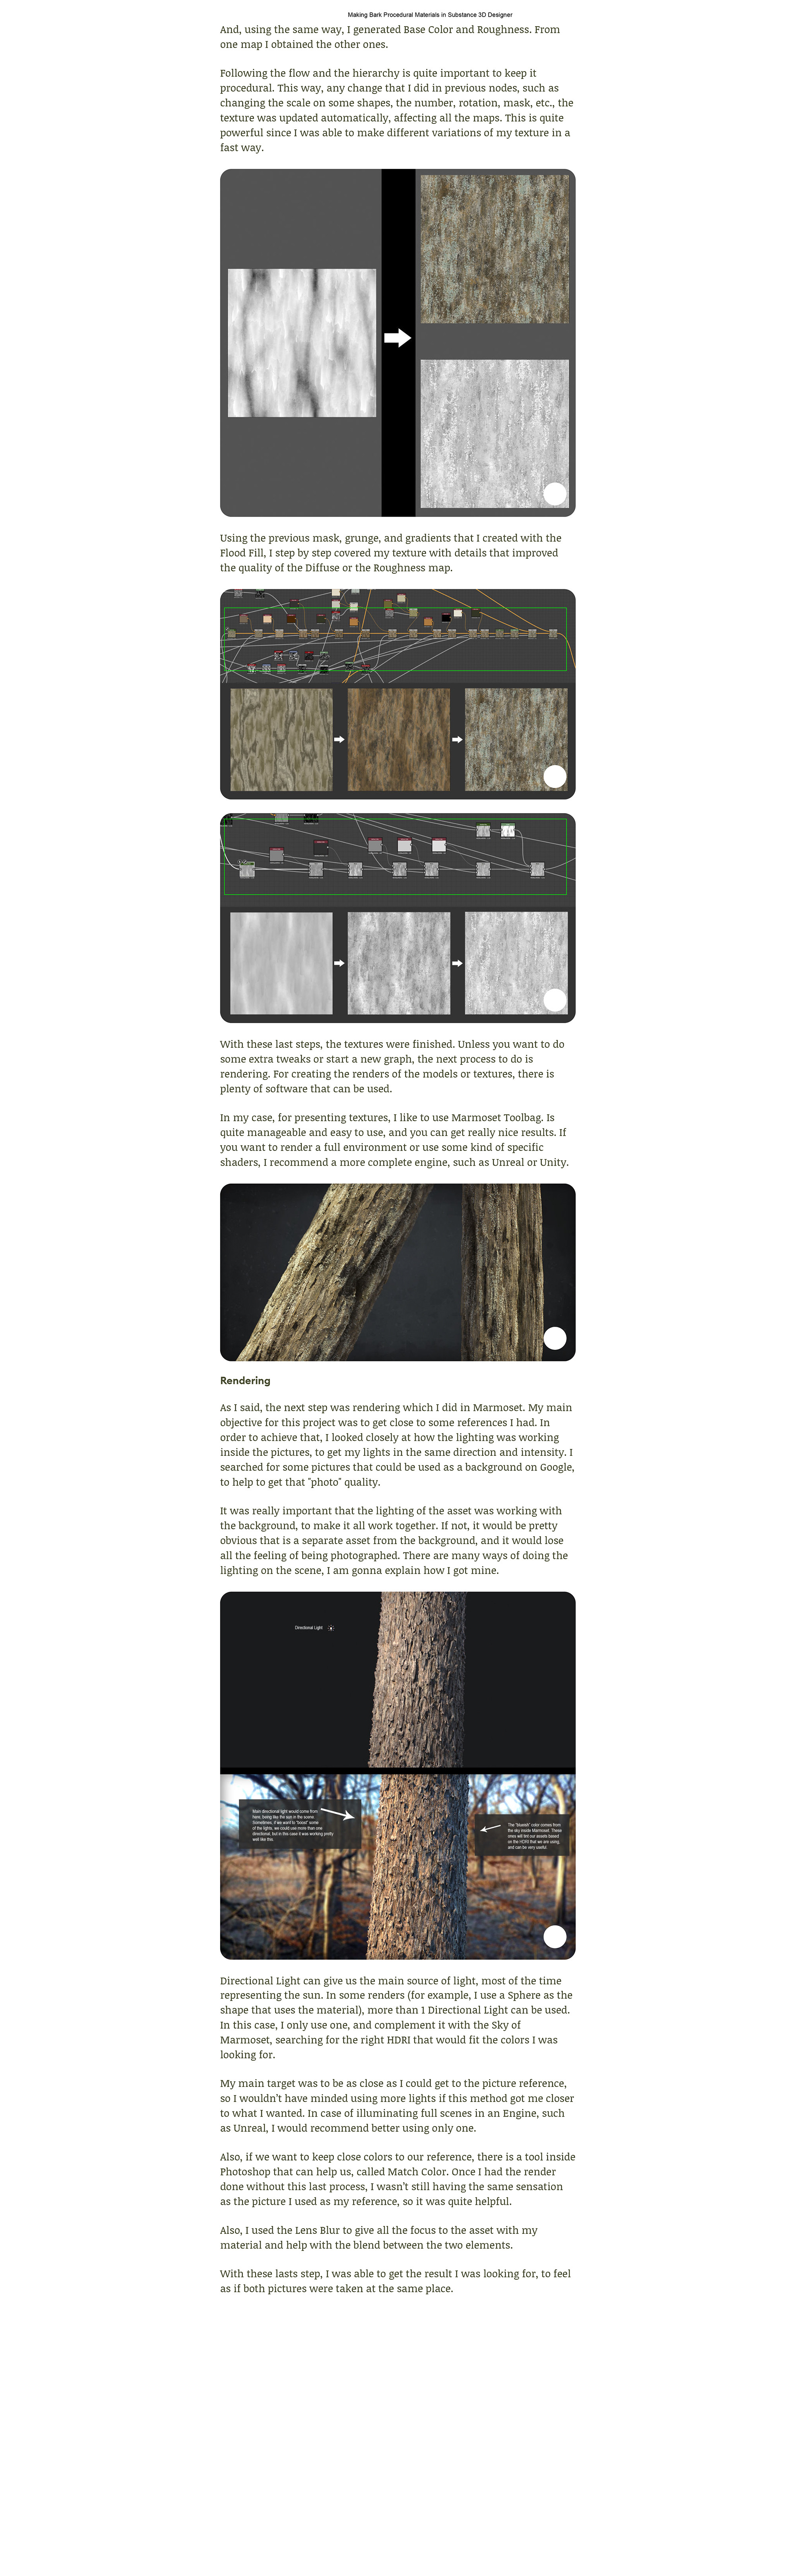 PBR Wood Bark Material Breakdown - Đi sâu vào sự tinh tế của bộ vật liệu PBR với thiết kế vật liệu vỏ cây. Hãy xem qua hình ảnh các thành phần của chúng để tạo ra các vật liệu chân thật và độc đáo.